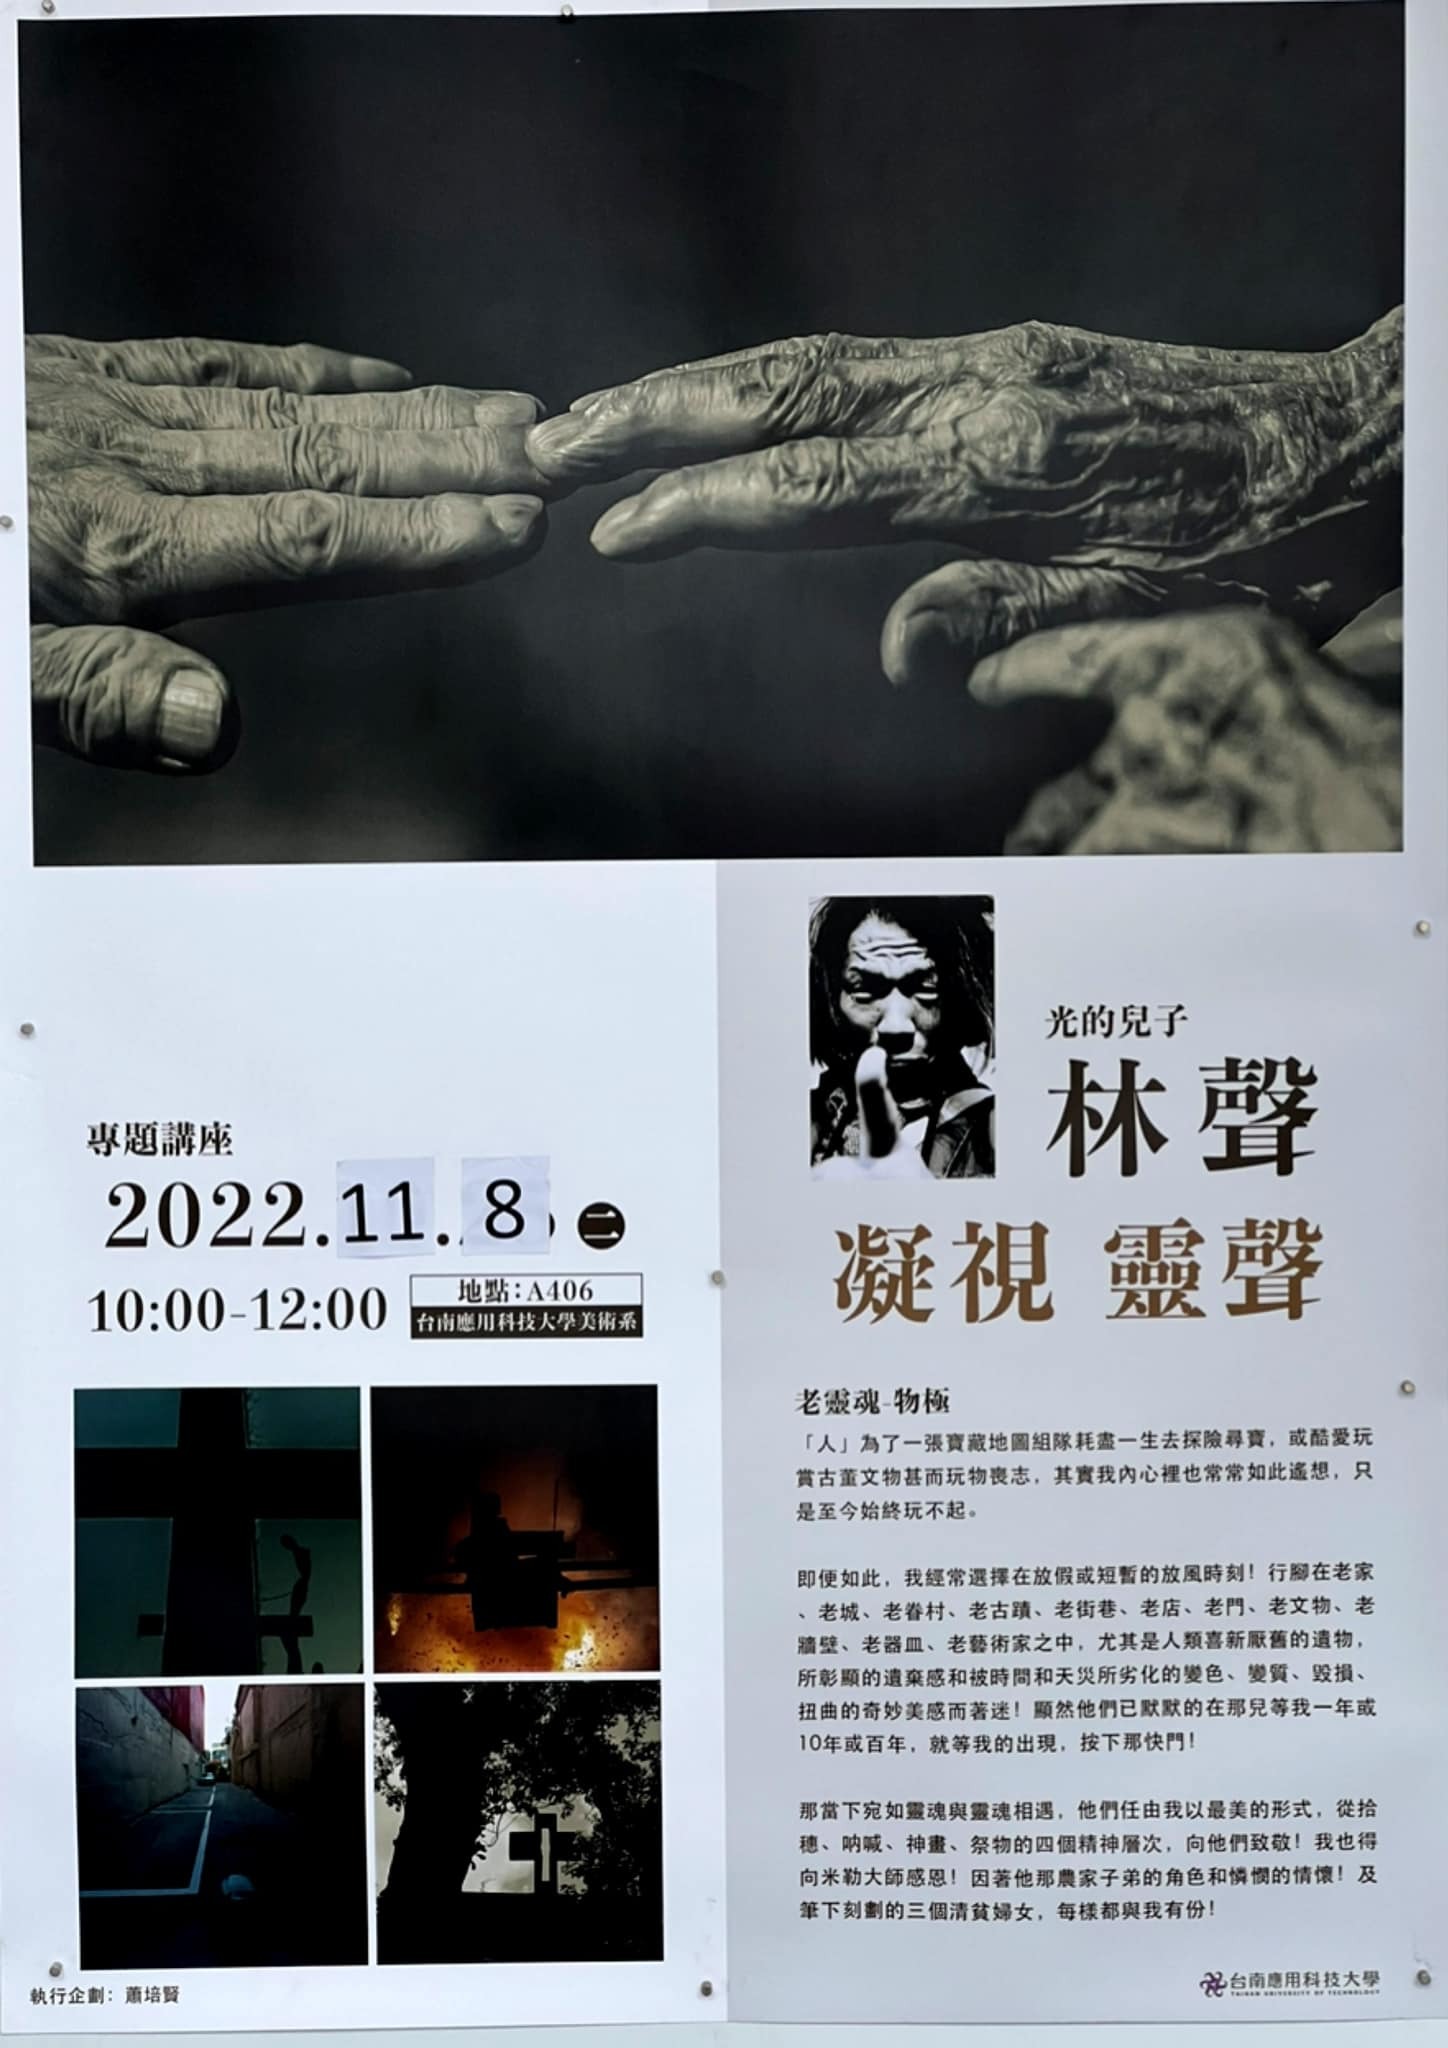 2022.(原訂10.25改期至11.08)南應大美術系主辦攝影家林聲專題講座